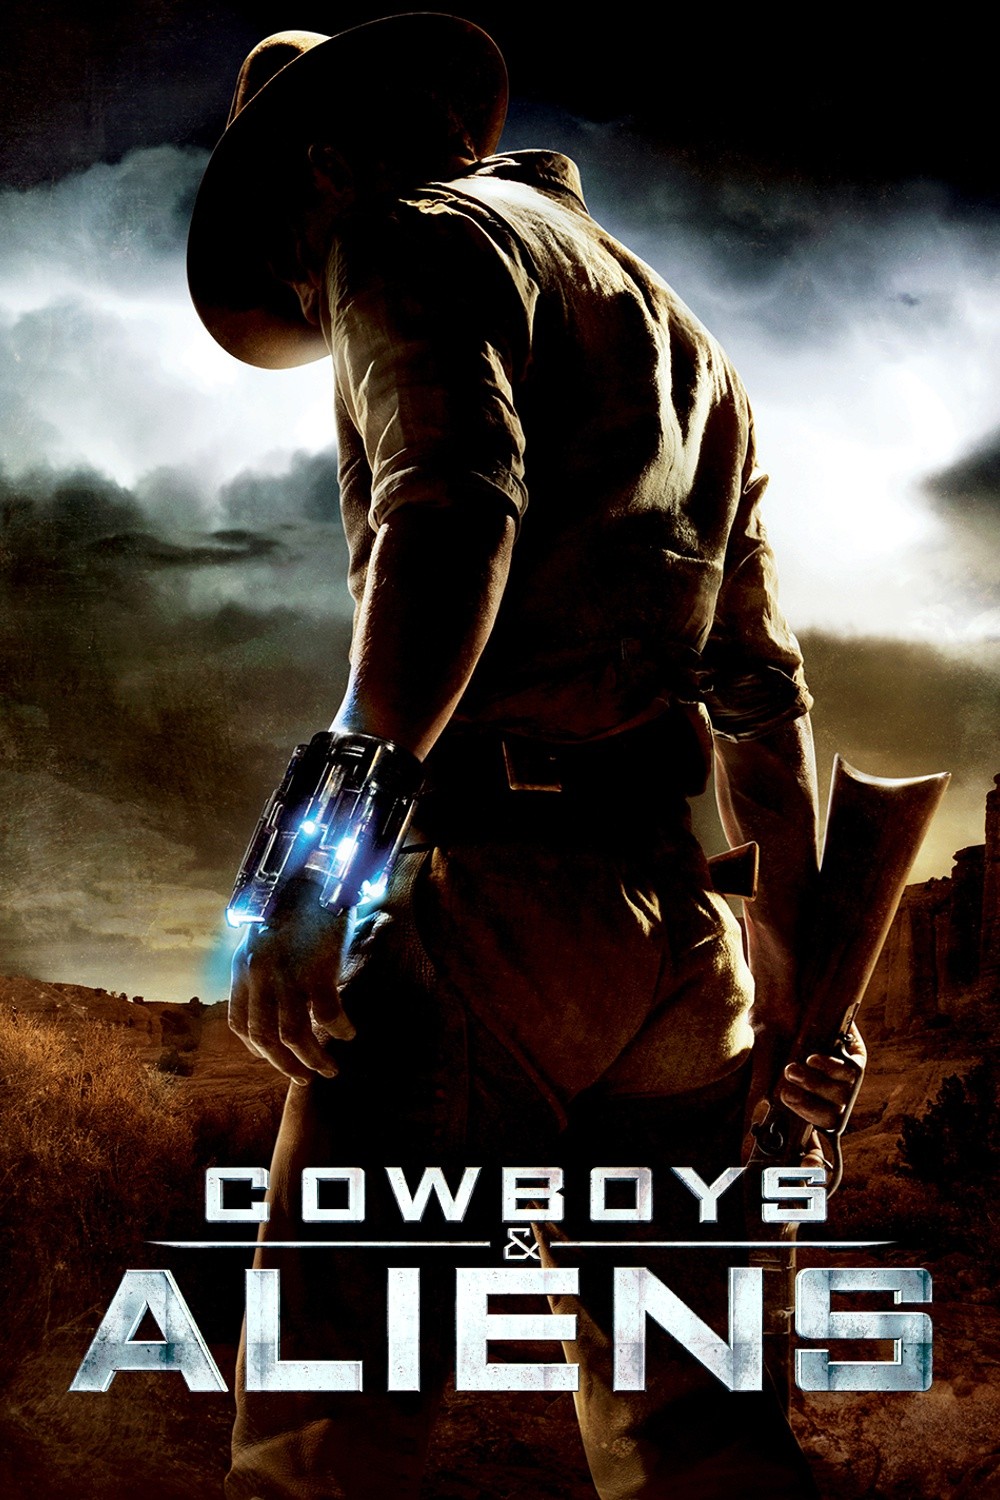 دانلود فیلم Cowboys & Aliens 2011